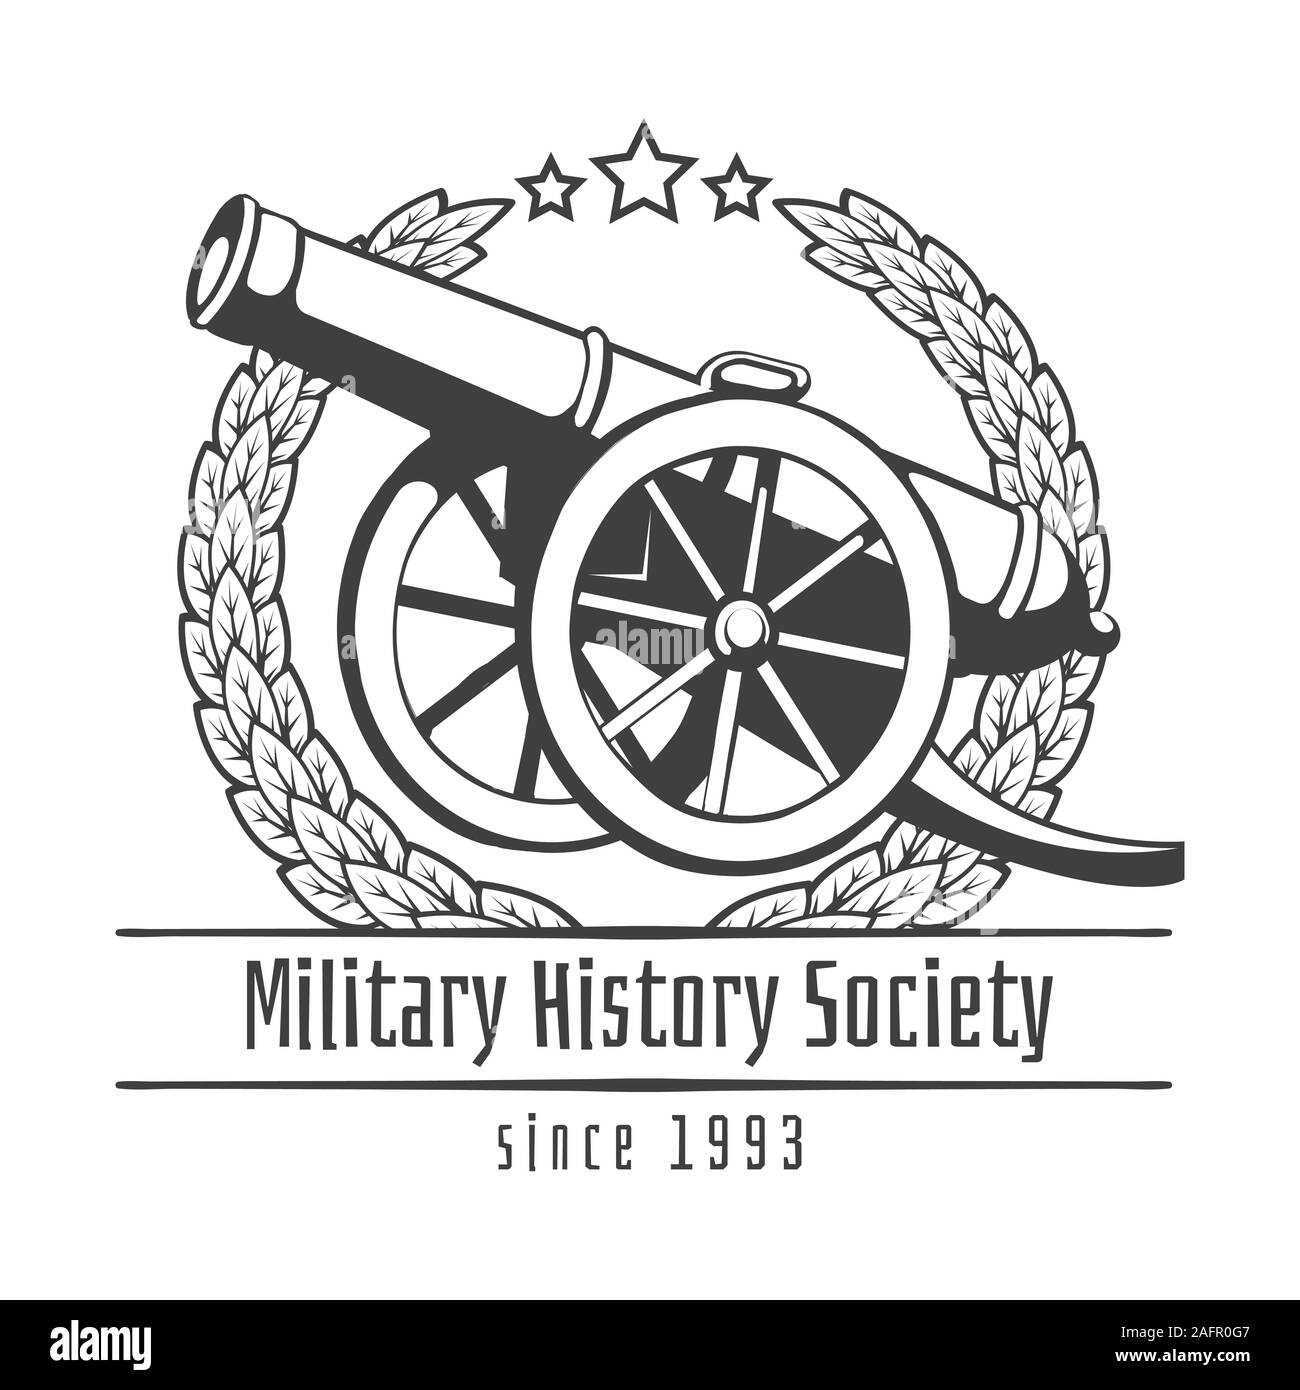 Die militärische Geschichte Gesellschaft Emblem Stock Vektor